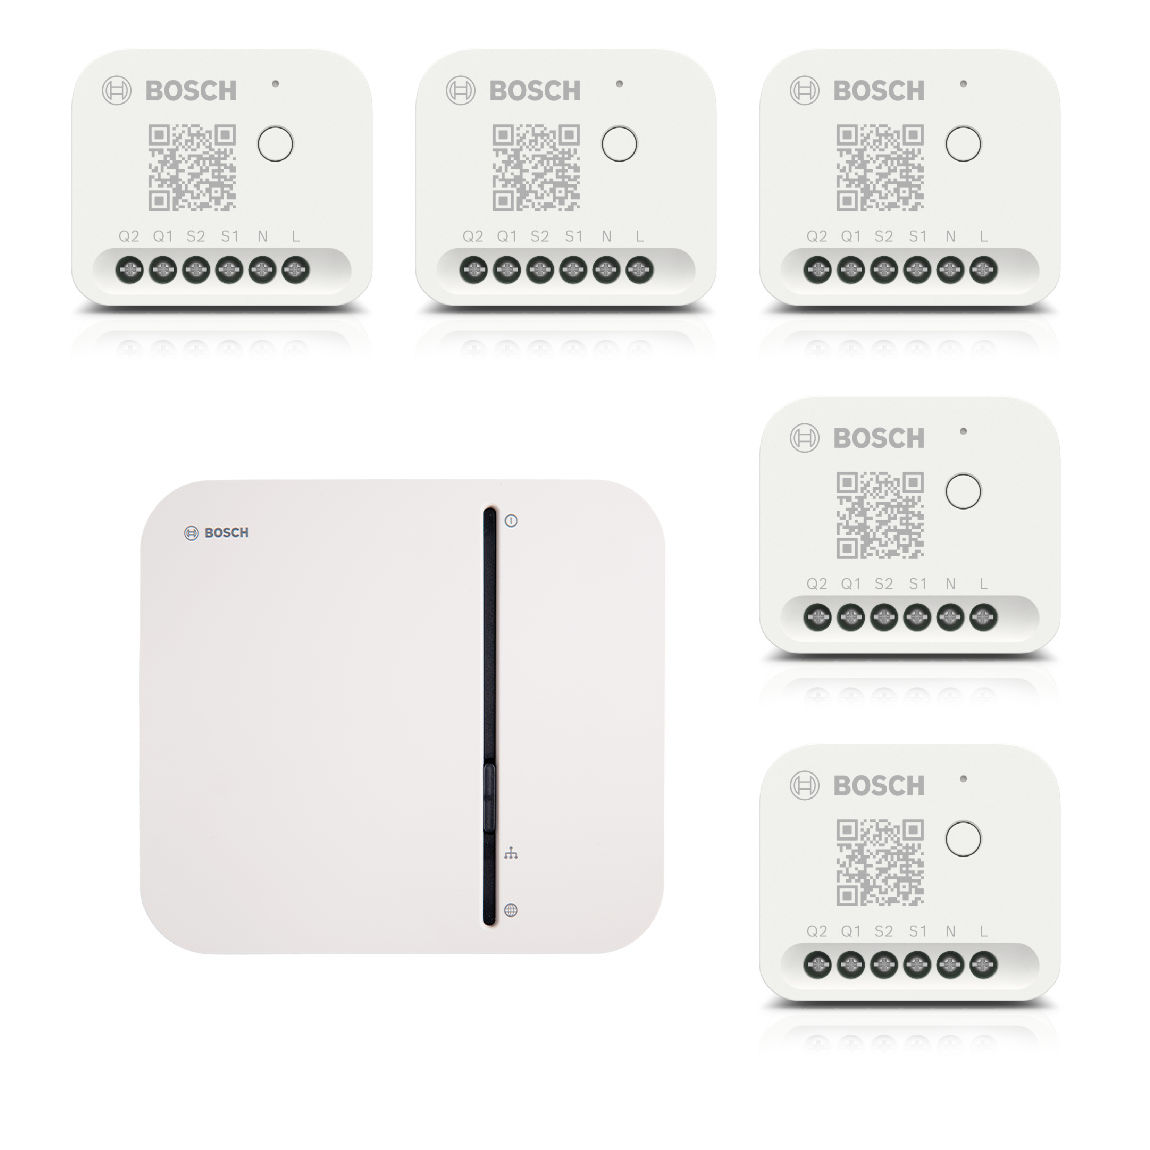 Bosch Smart Home – Starter Set Licht-/ Rollladensteuerung mit 5 Unterputz-Aktoren (Gen. 2) – Deal, Schnäppchen, sparen